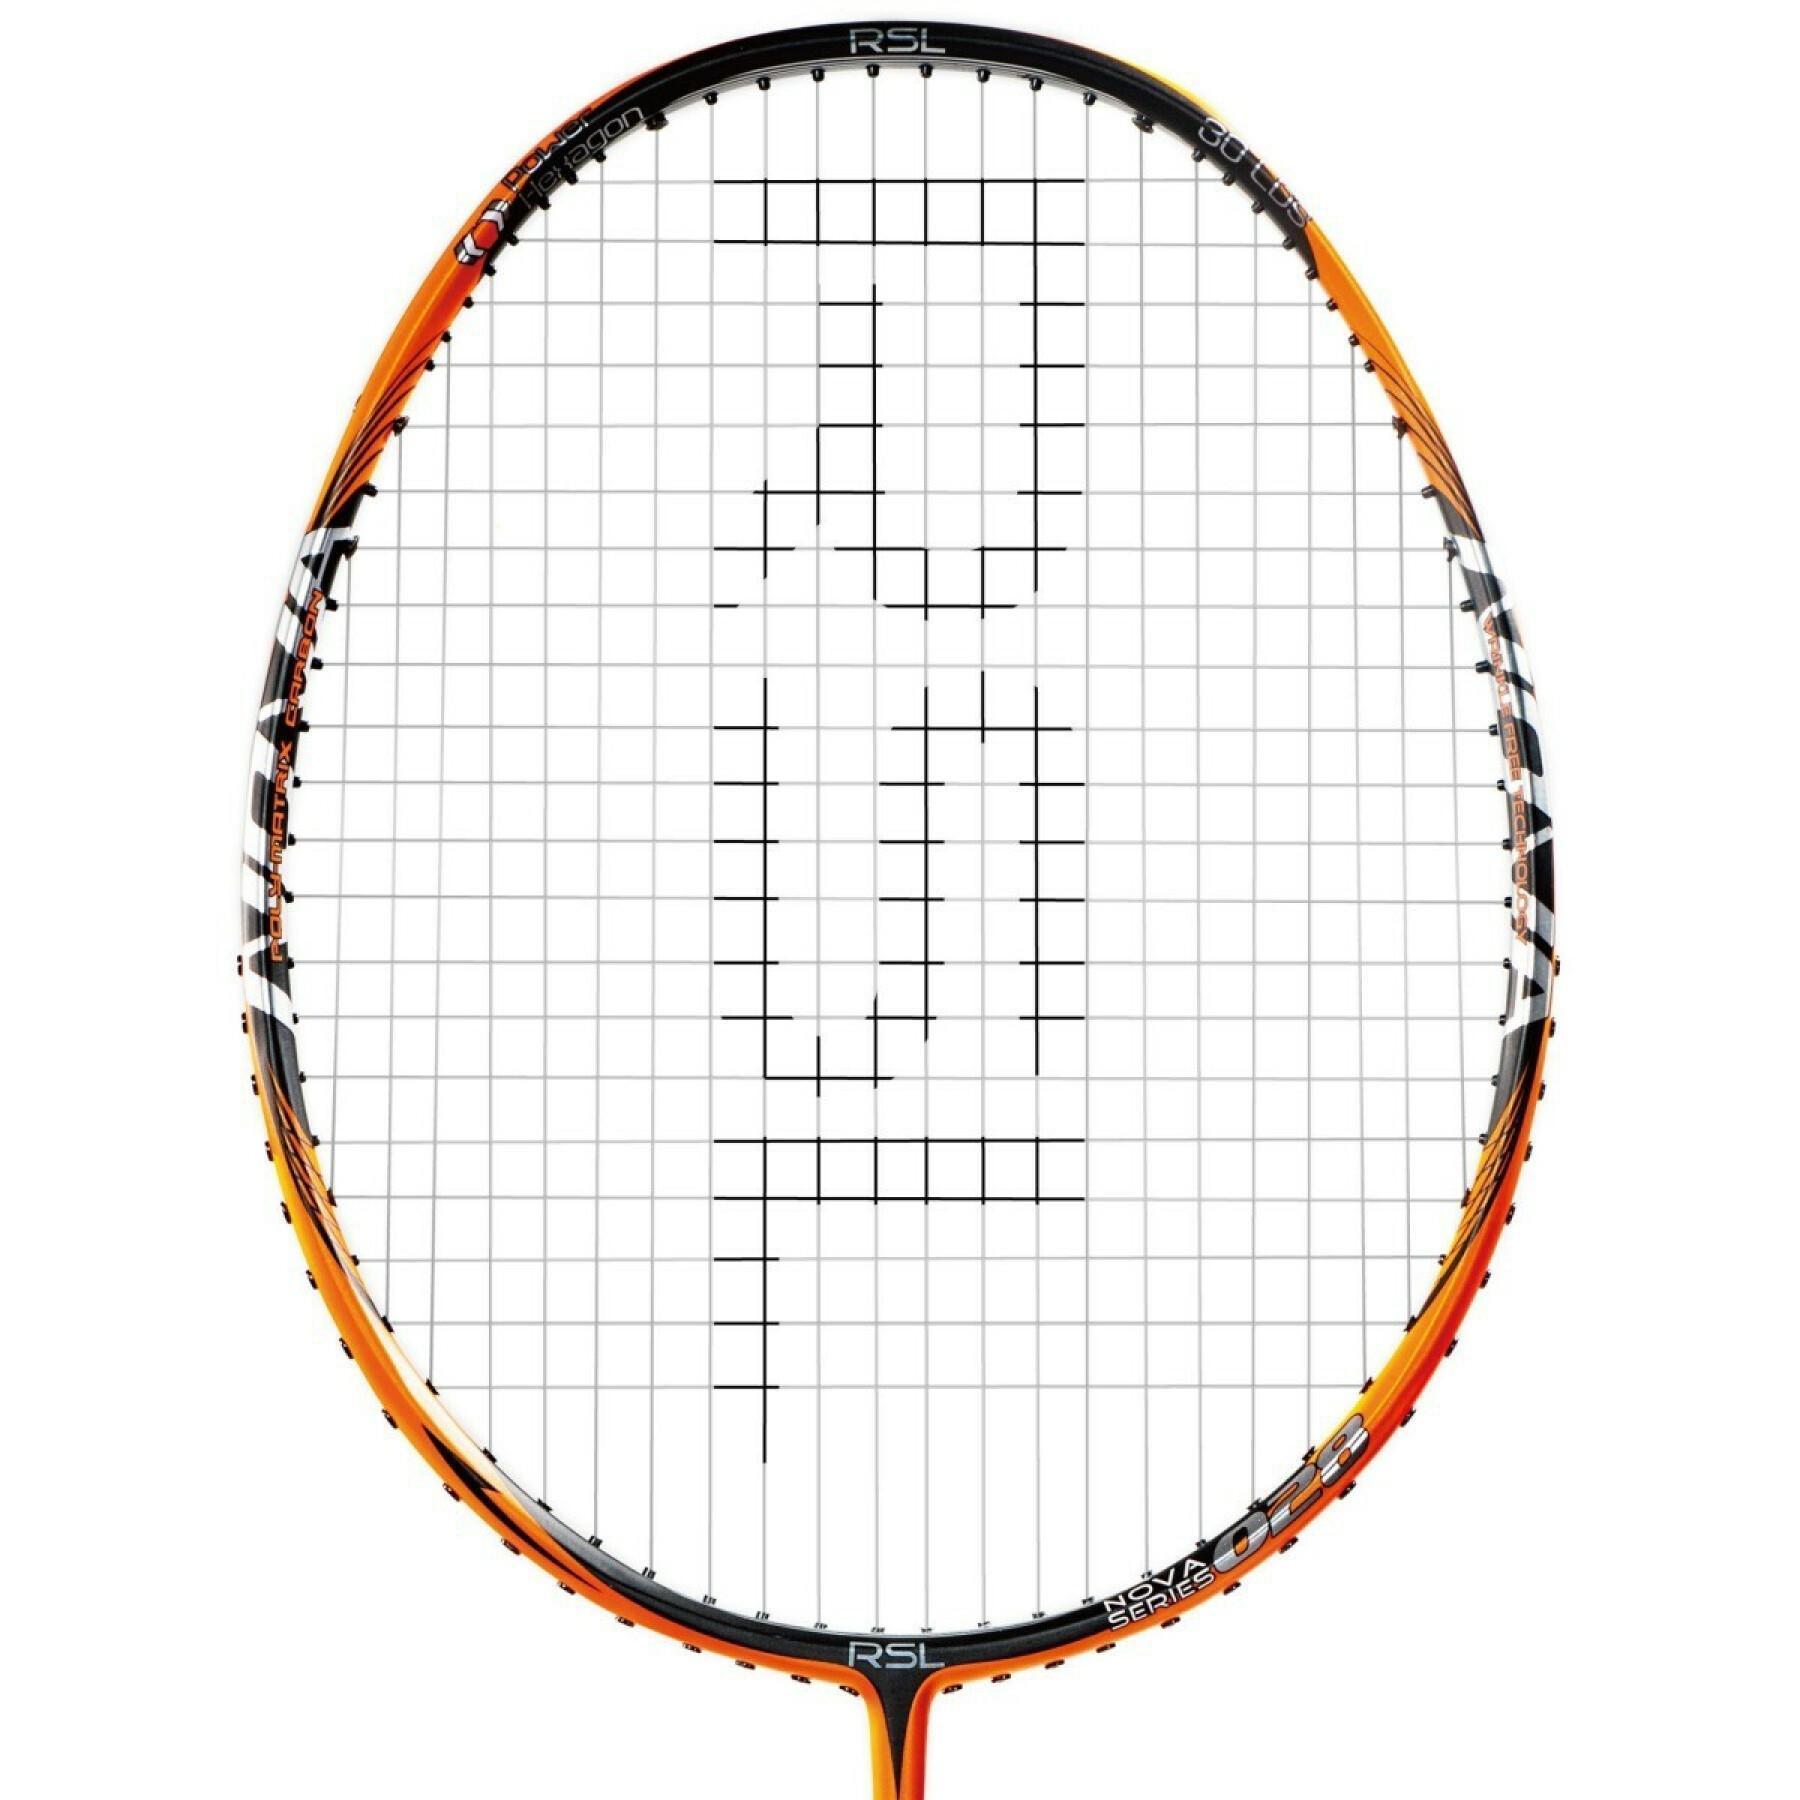 Badmintonschläger RSL Nova